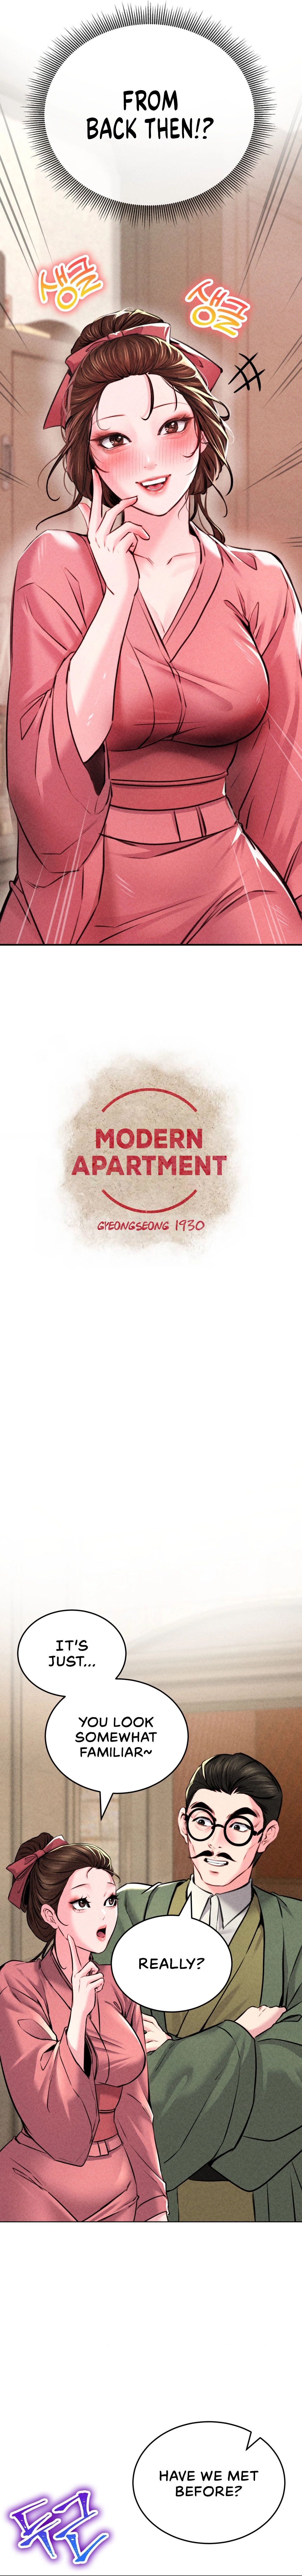 Read manhwa Modern Apartment, Gyeongseong 1930 Chapter 12 - SauceManhwa.com